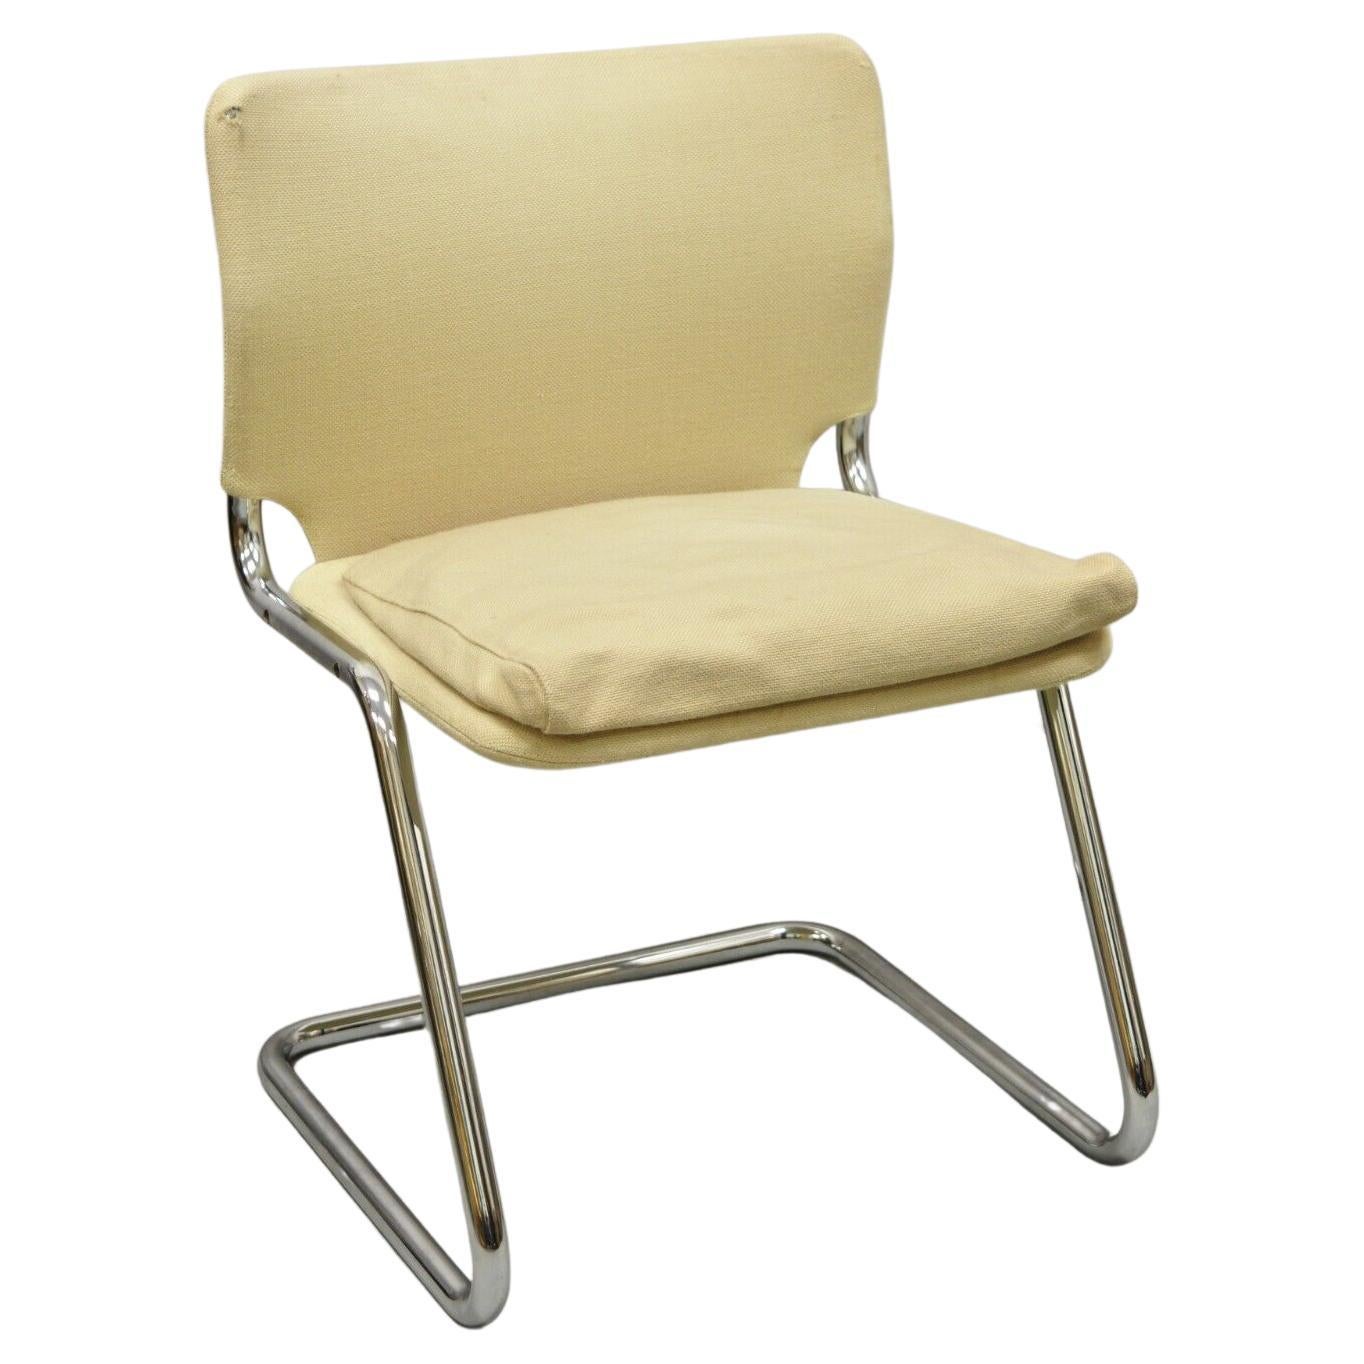 The Modernity Tubular Chrome Cantilever Side Chair with Burlap Seat (Chaise d'appoint tubulaire en chrome avec assise en toile de jute)